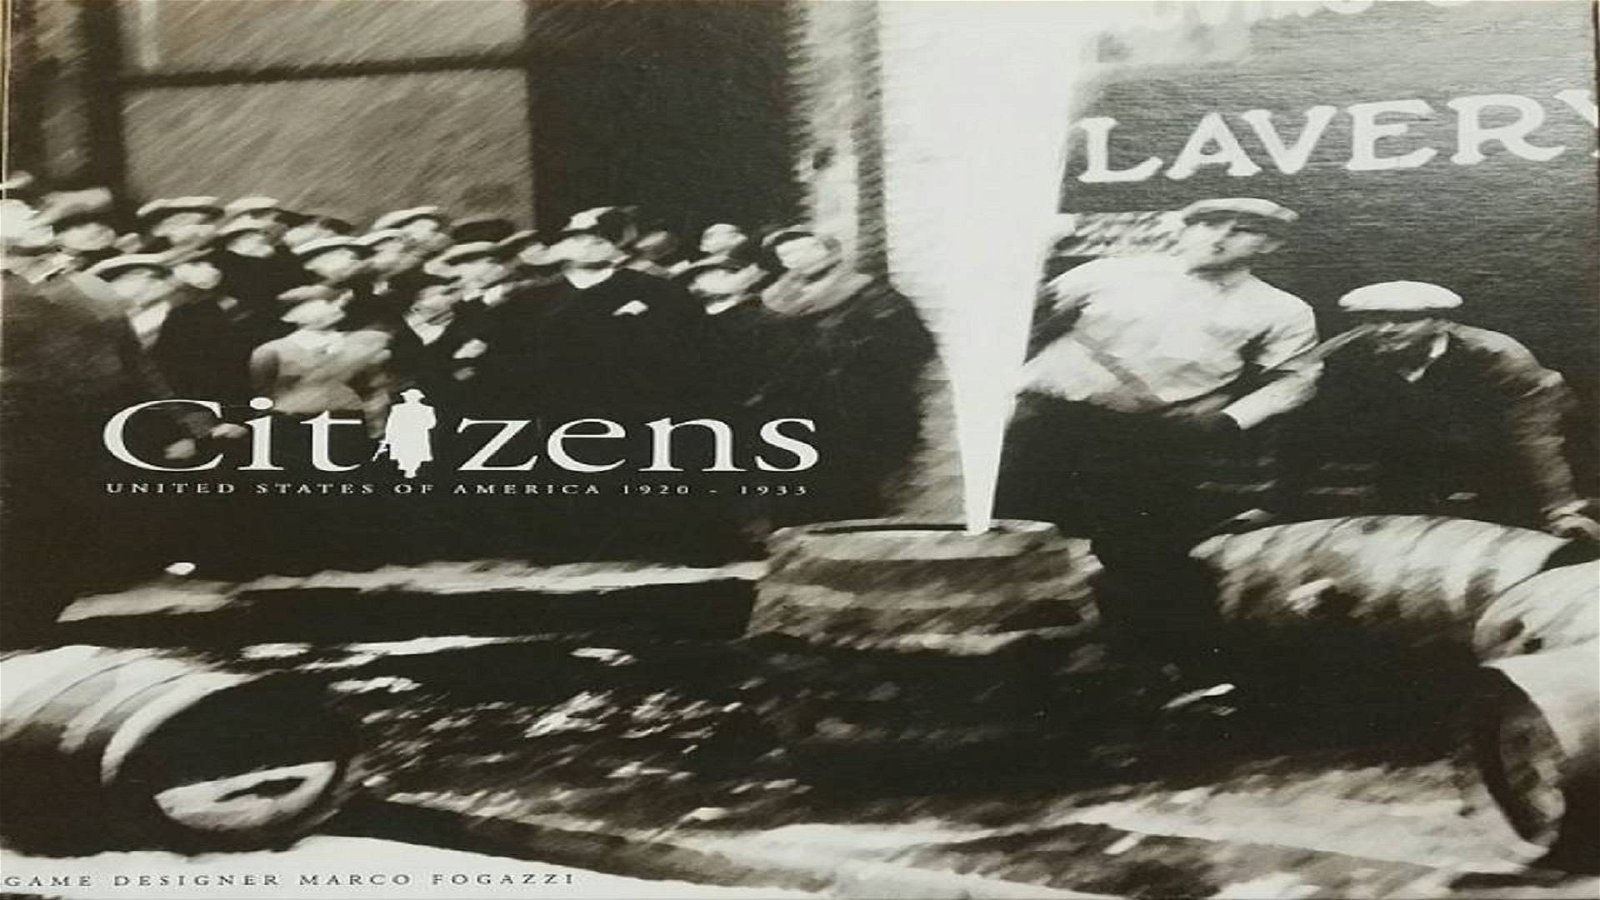 Immagine di Citizens - United States of America 1920 - 1933, la preview. Comuni cittadini ai tempi del proibizionismo.